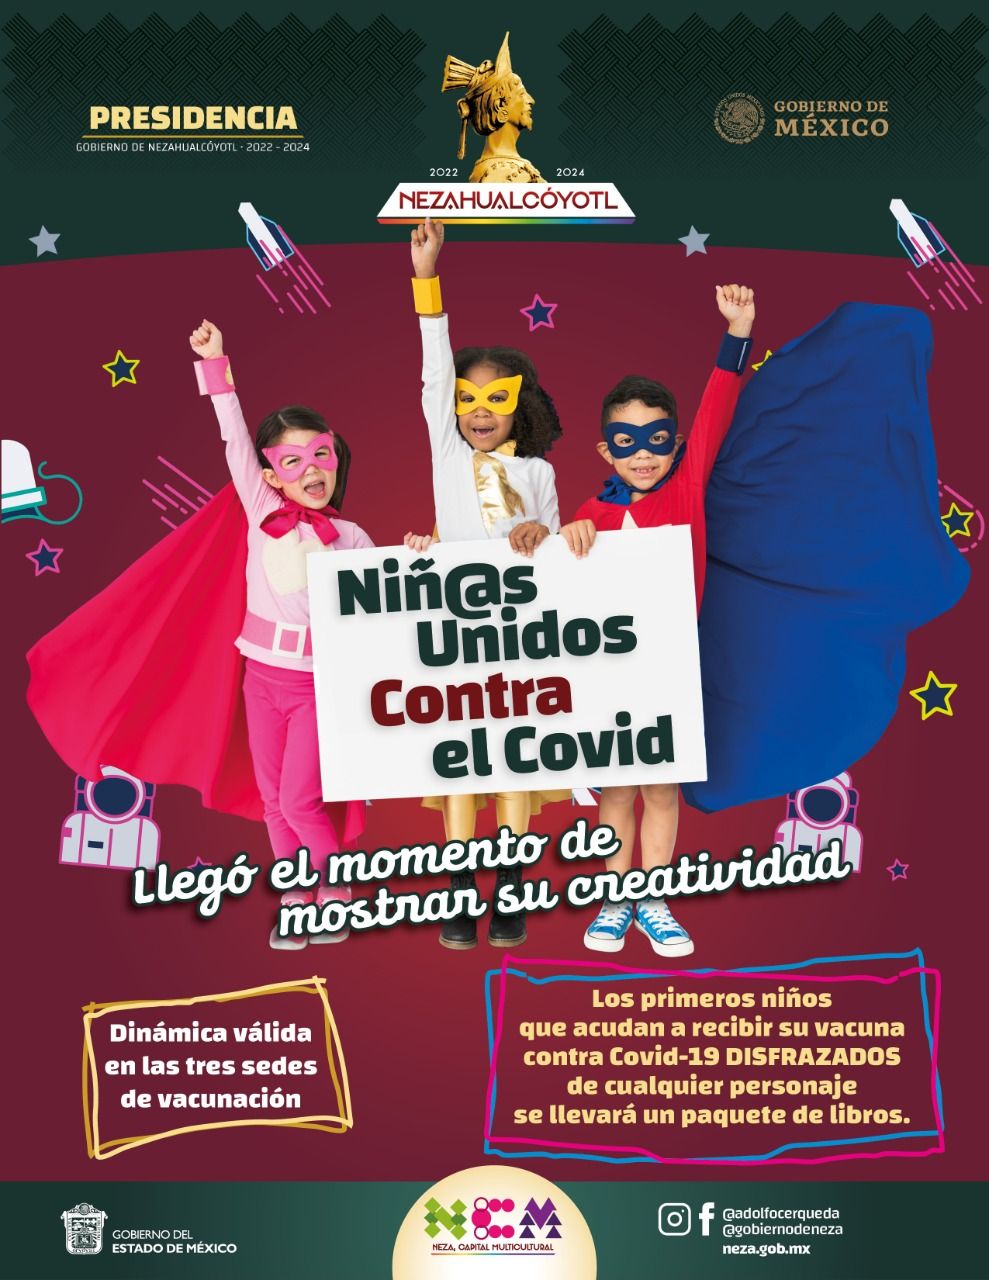 #Niños que se vacunen contra COVID en Neza recibirán libros: Adolfo Cerqueda